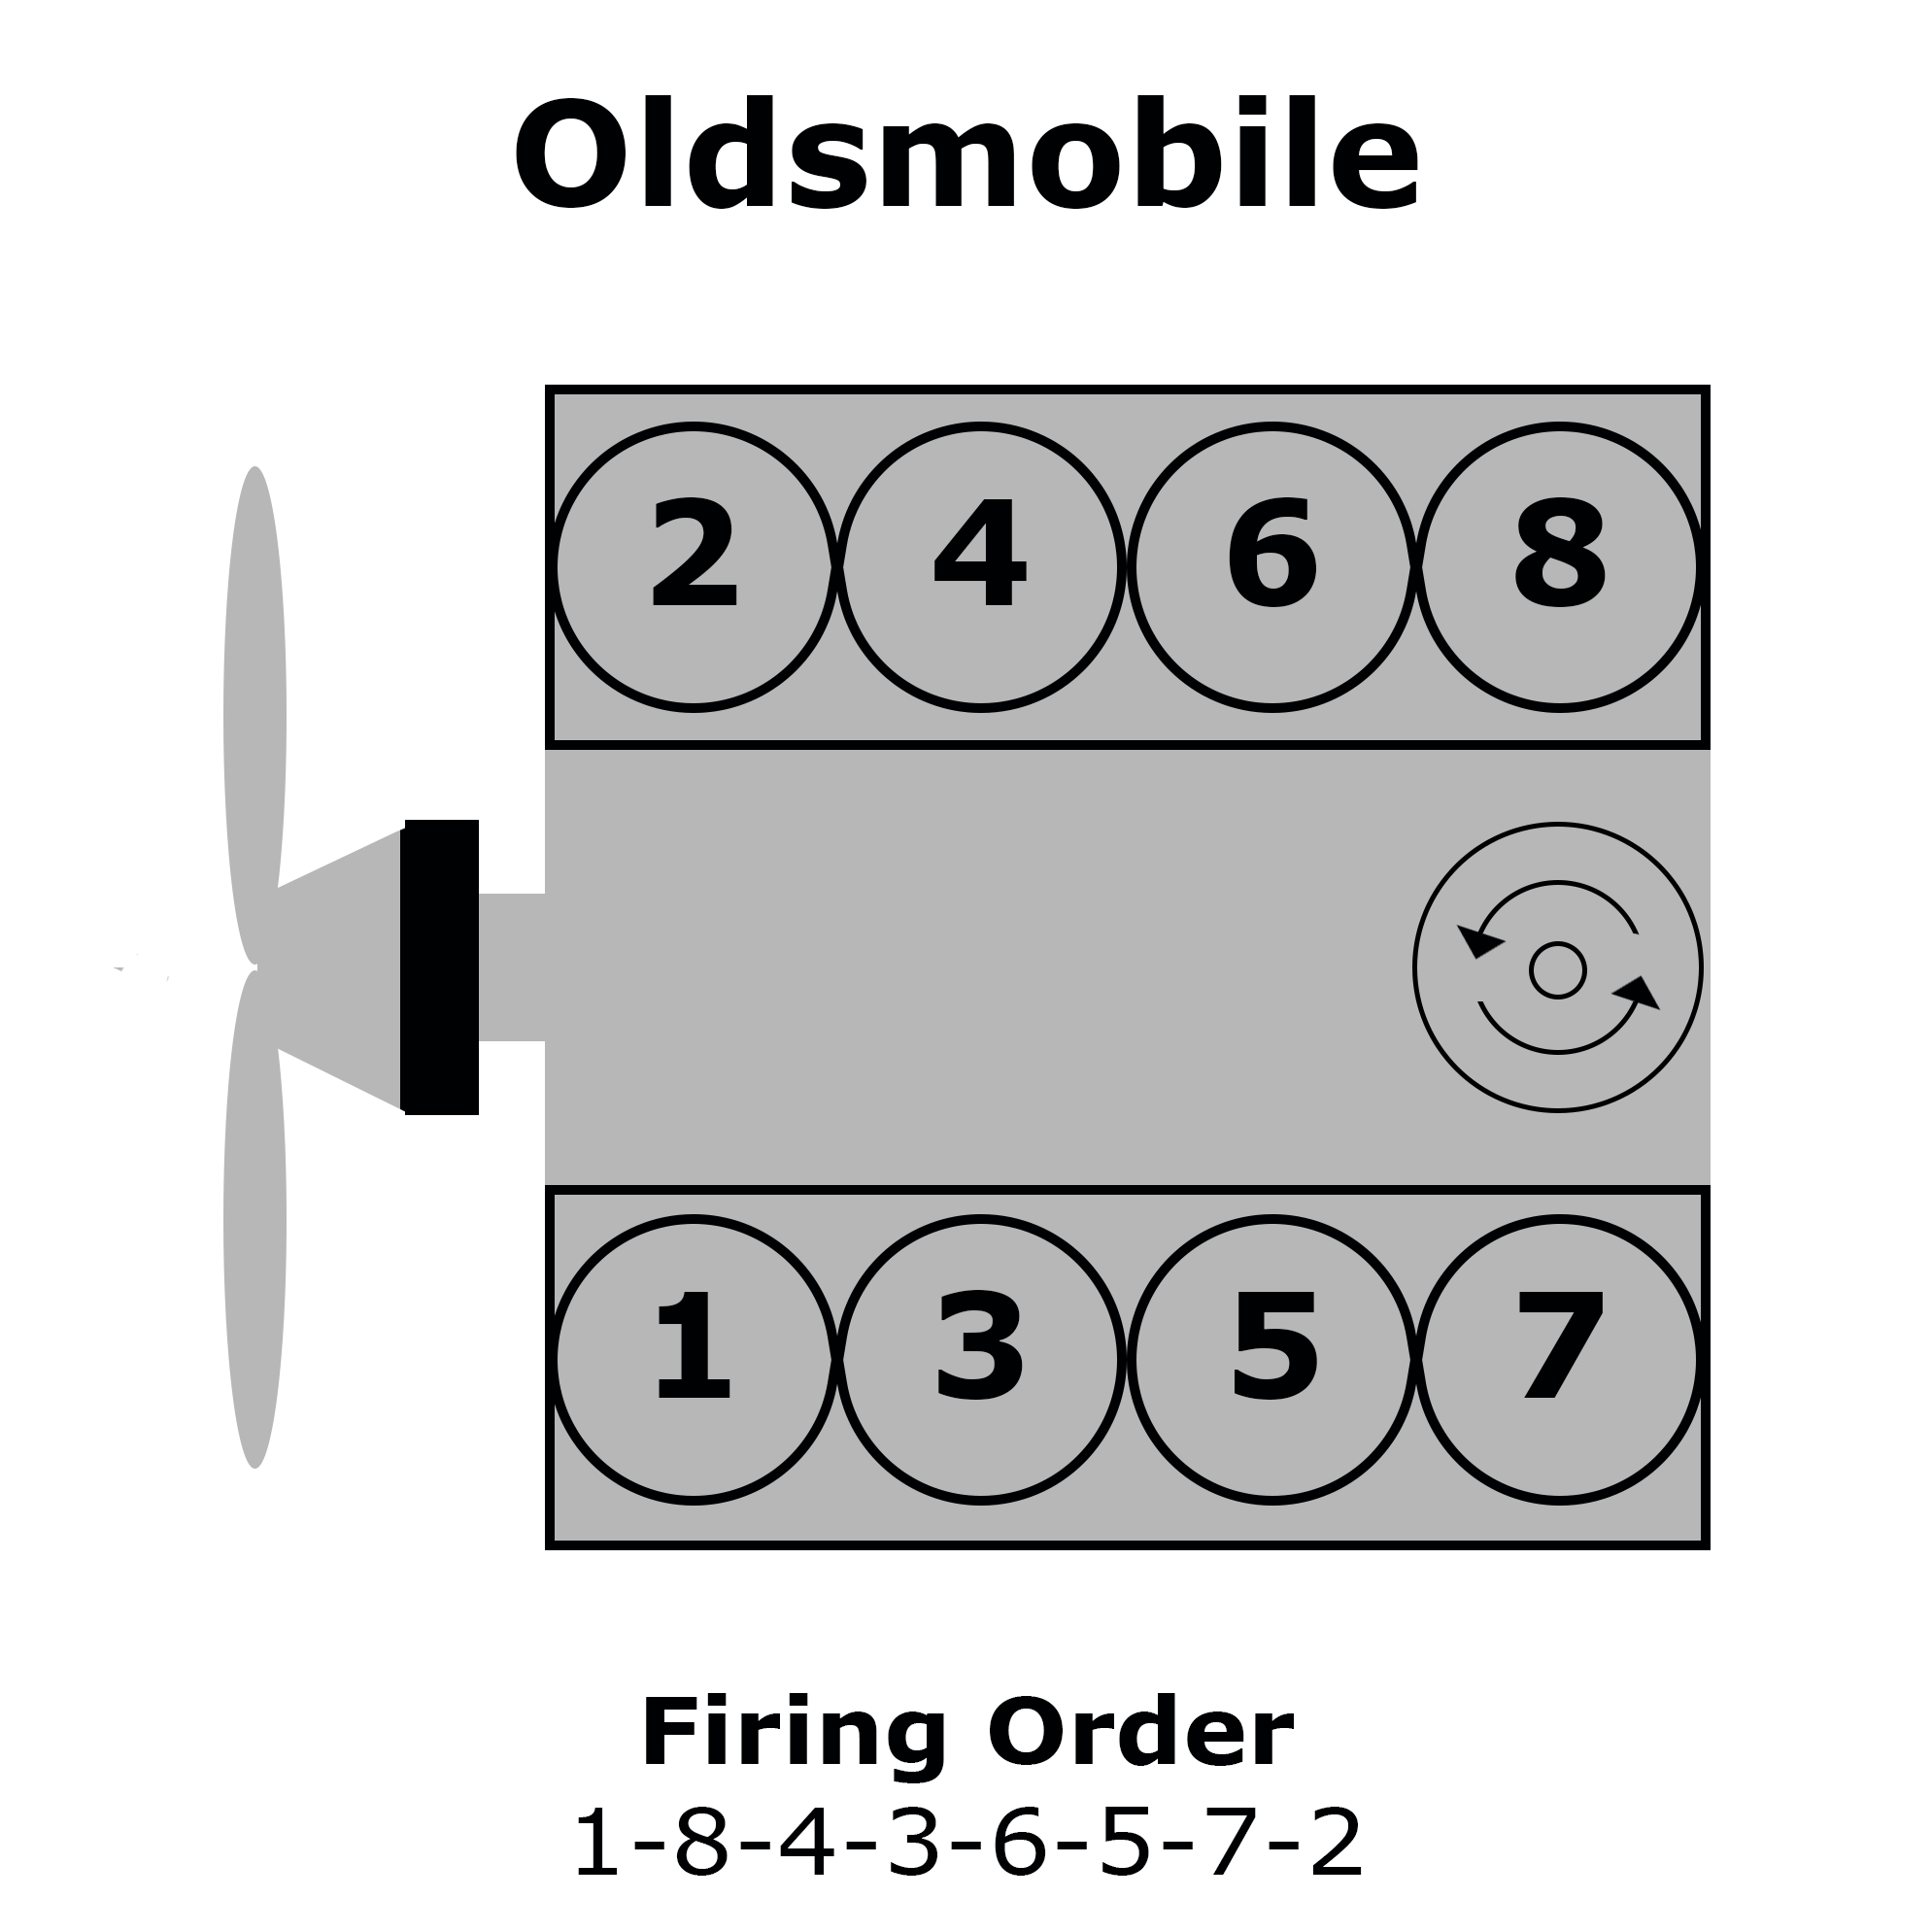 Oldsmobile V8 Cylinder Numbering, Distributor Rotation, and Firing Order